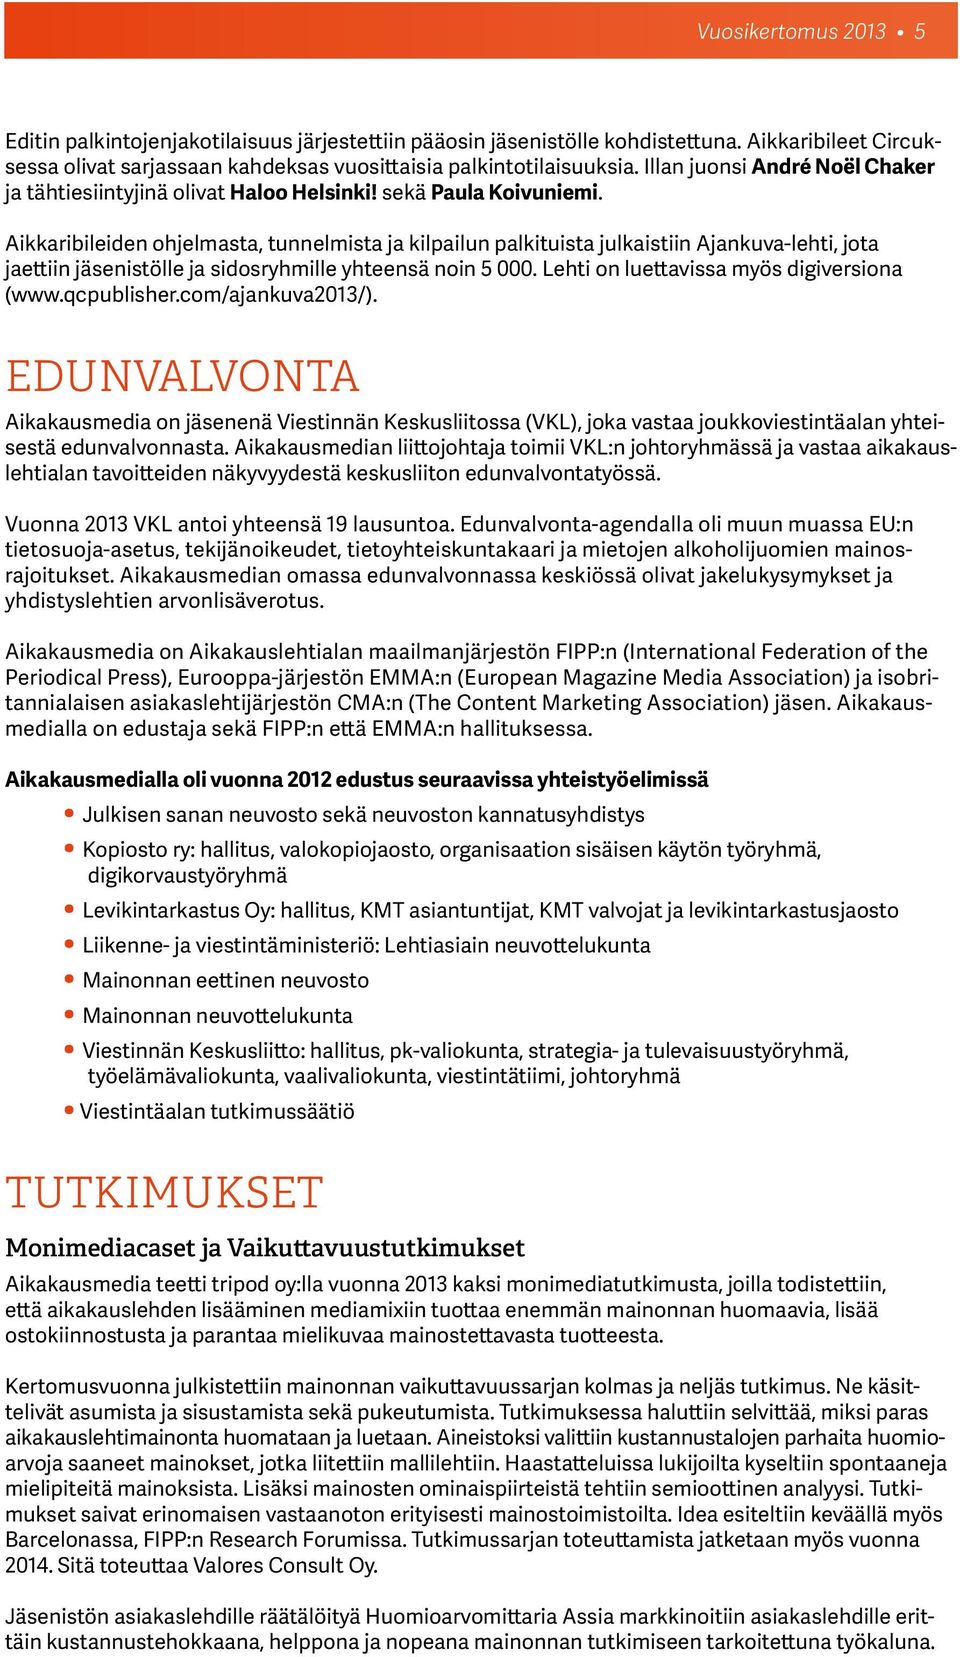 Aikkaribileiden ohjelmasta, tunnelmista ja kilpailun palkituista julkaistiin Ajankuva-lehti, jota jaettiin jäsenistölle ja sidosryhmille yhteensä noin 5 000.